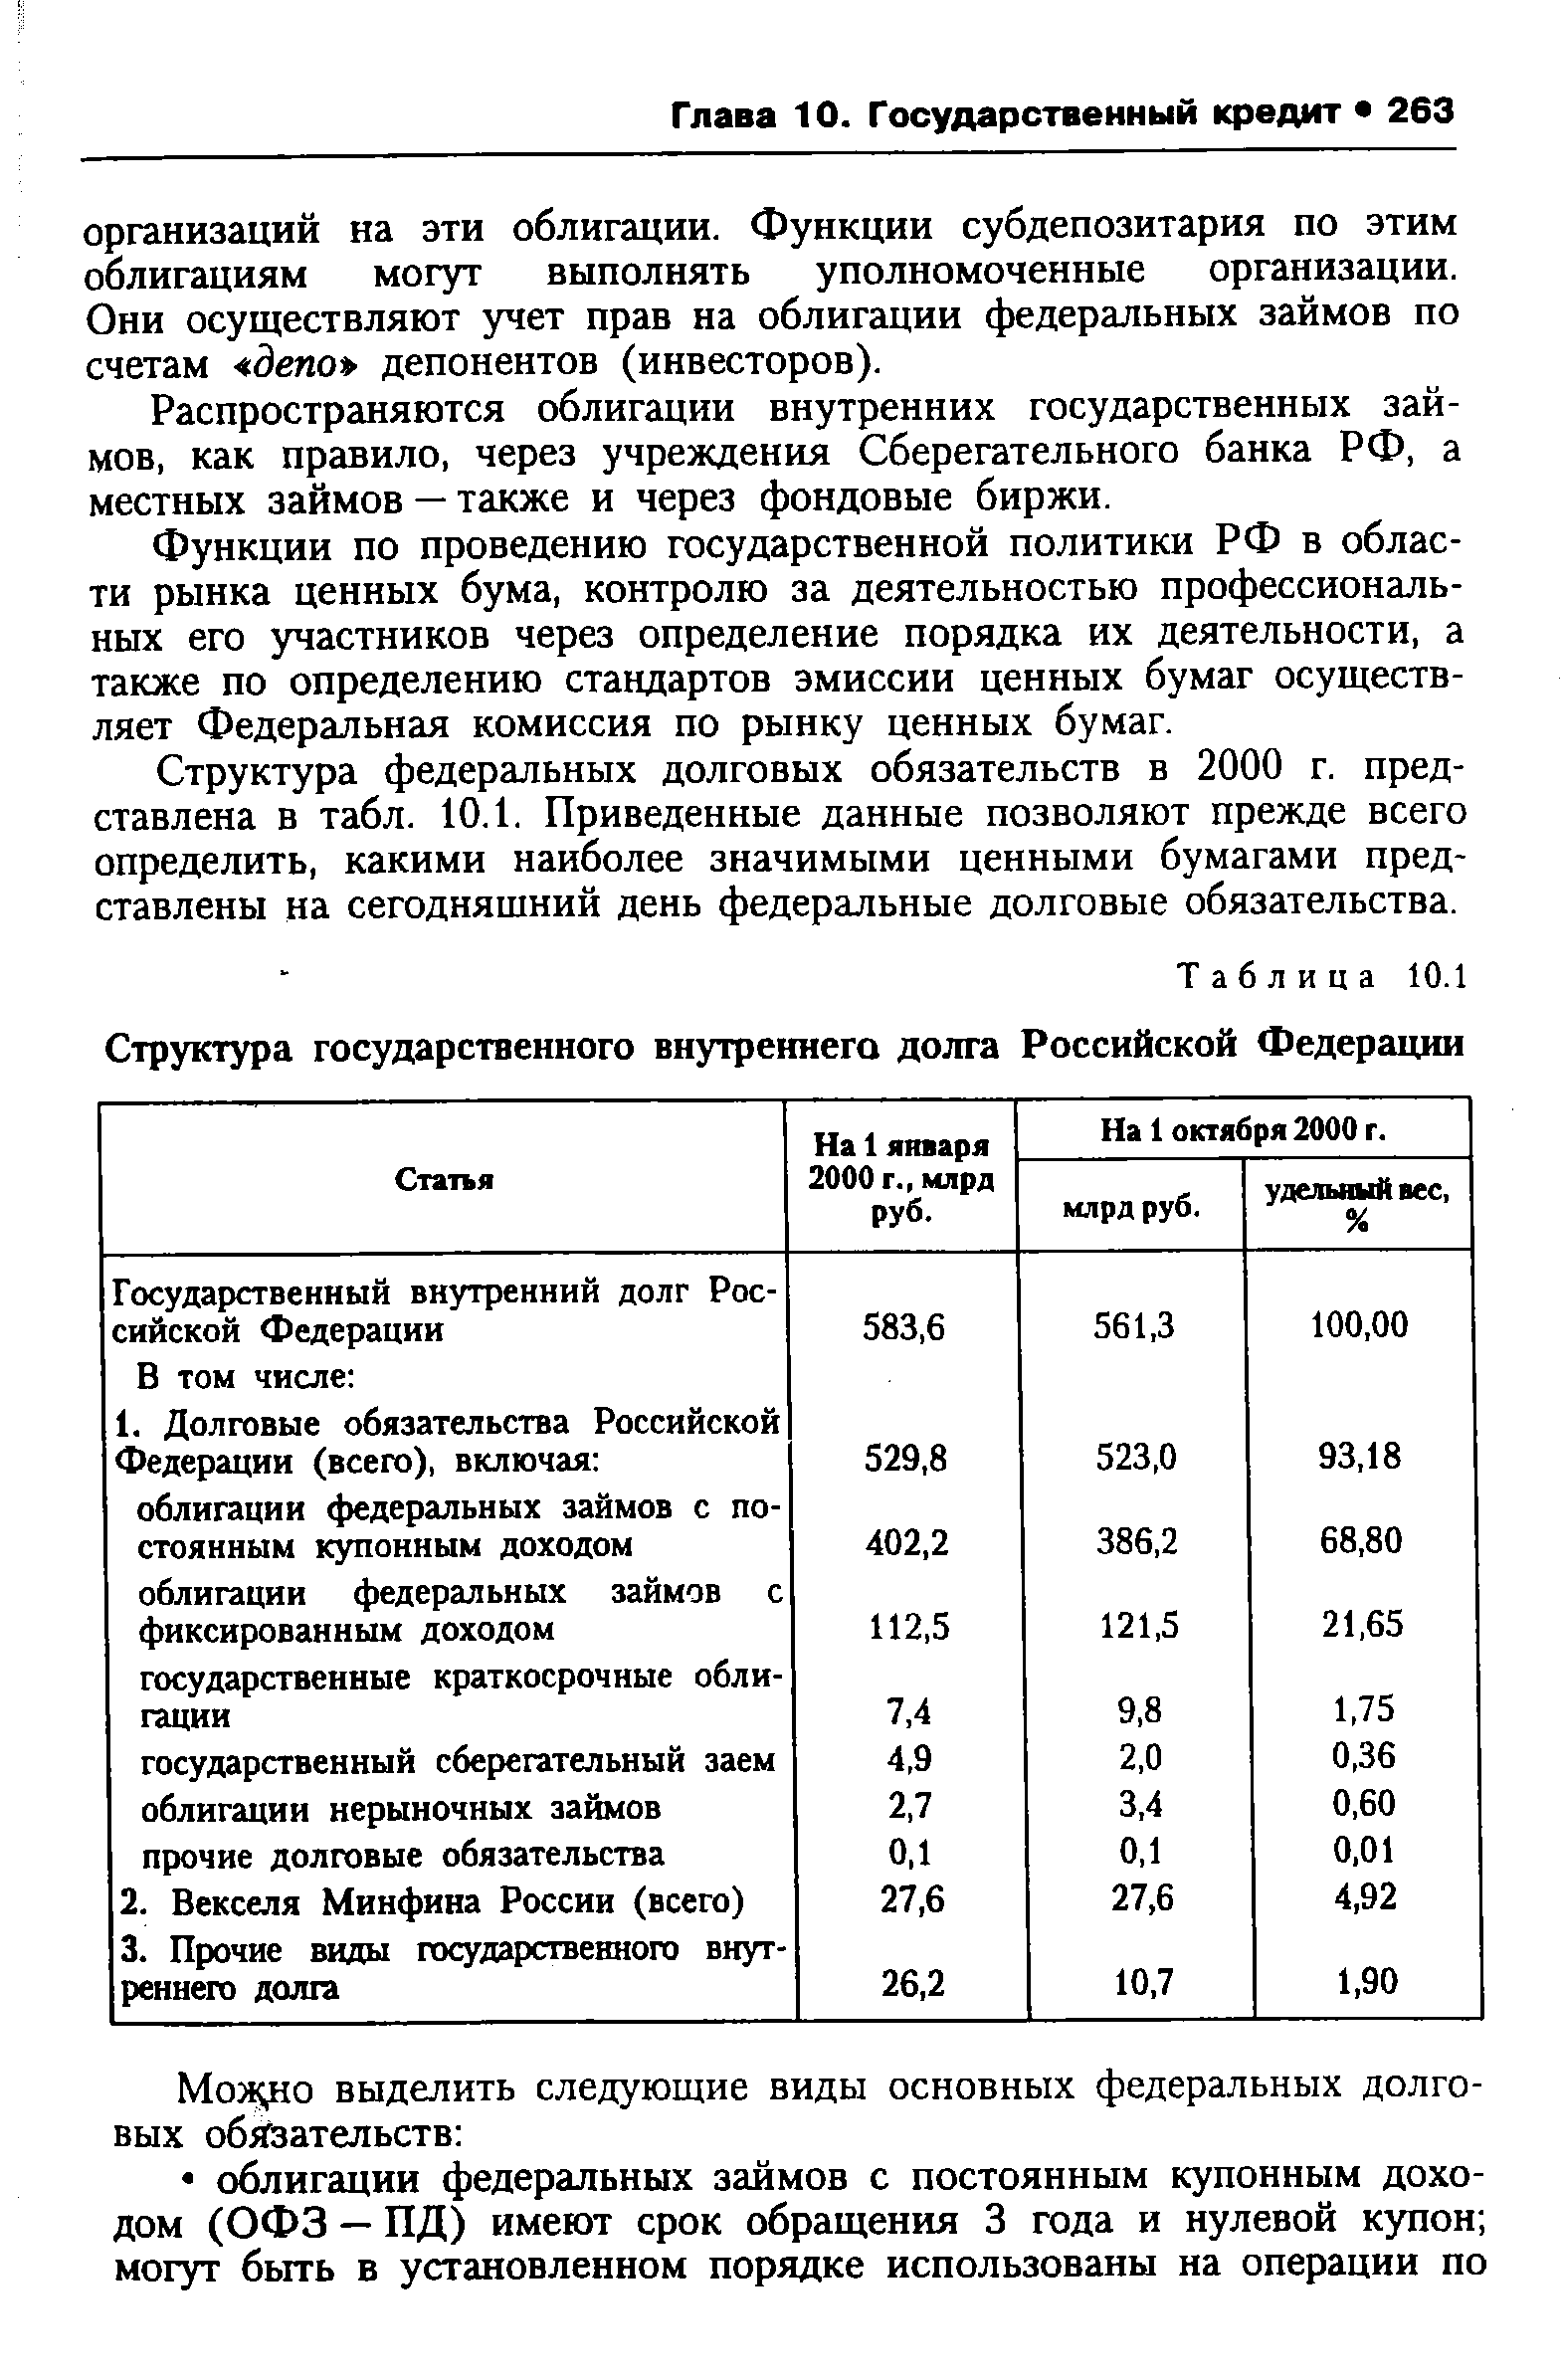 Таблица 10.1 Структура <a href="/info/138022">государственного внутреннего долга</a> Российской Федерации
